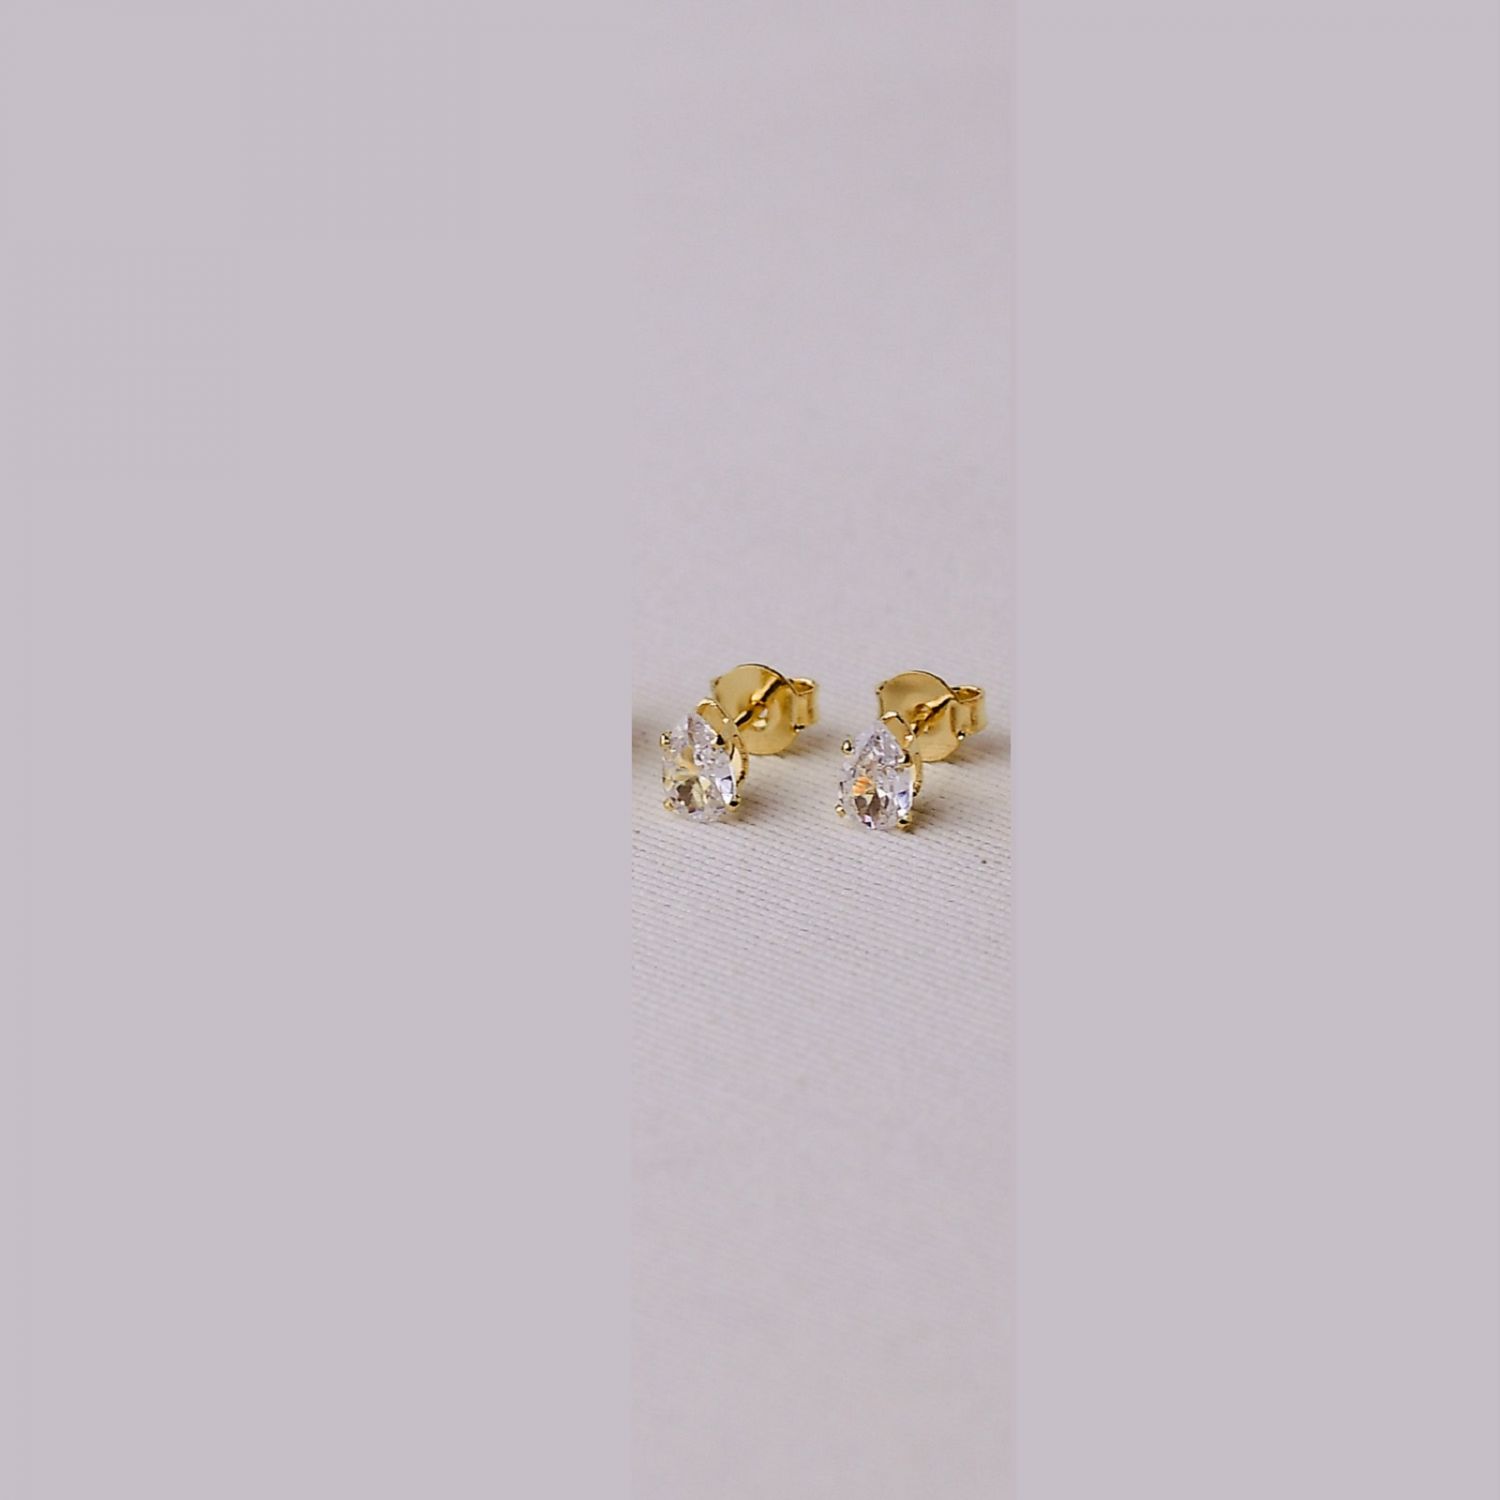 Brinco Dourado Ponto de Luz Gota com Zircônias Cristais 8mm